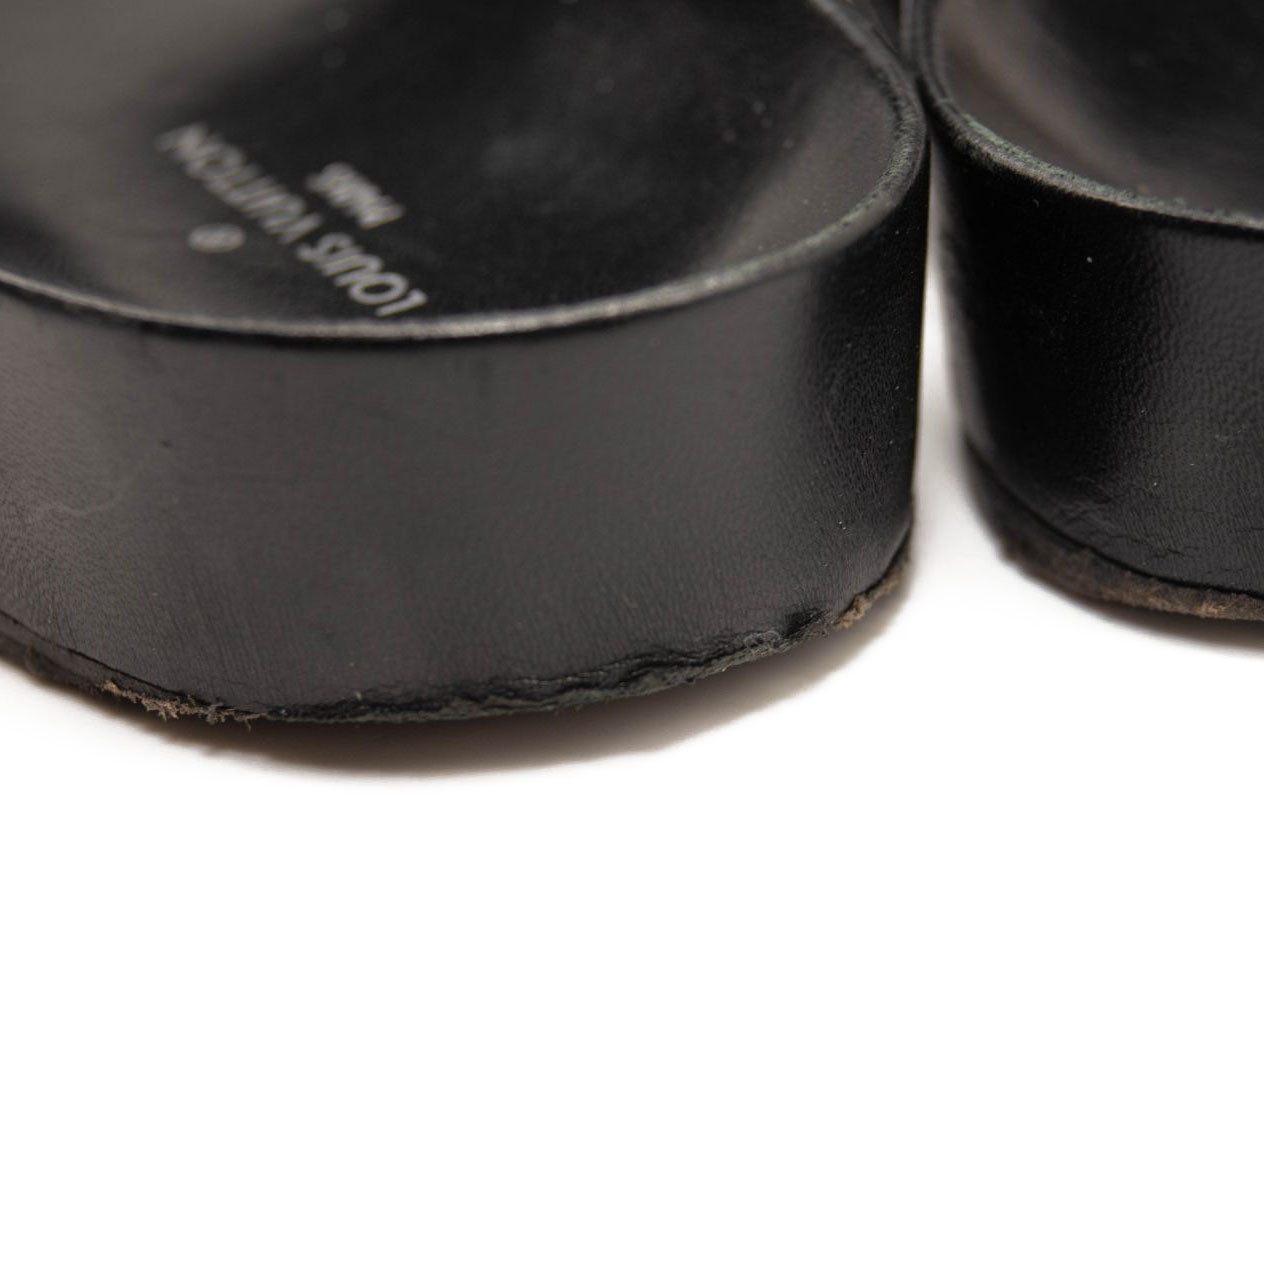 Louis Vuitton Black Leather New Wave Bom Dia Flat Sandals Size 37.5 Louis  Vuitton